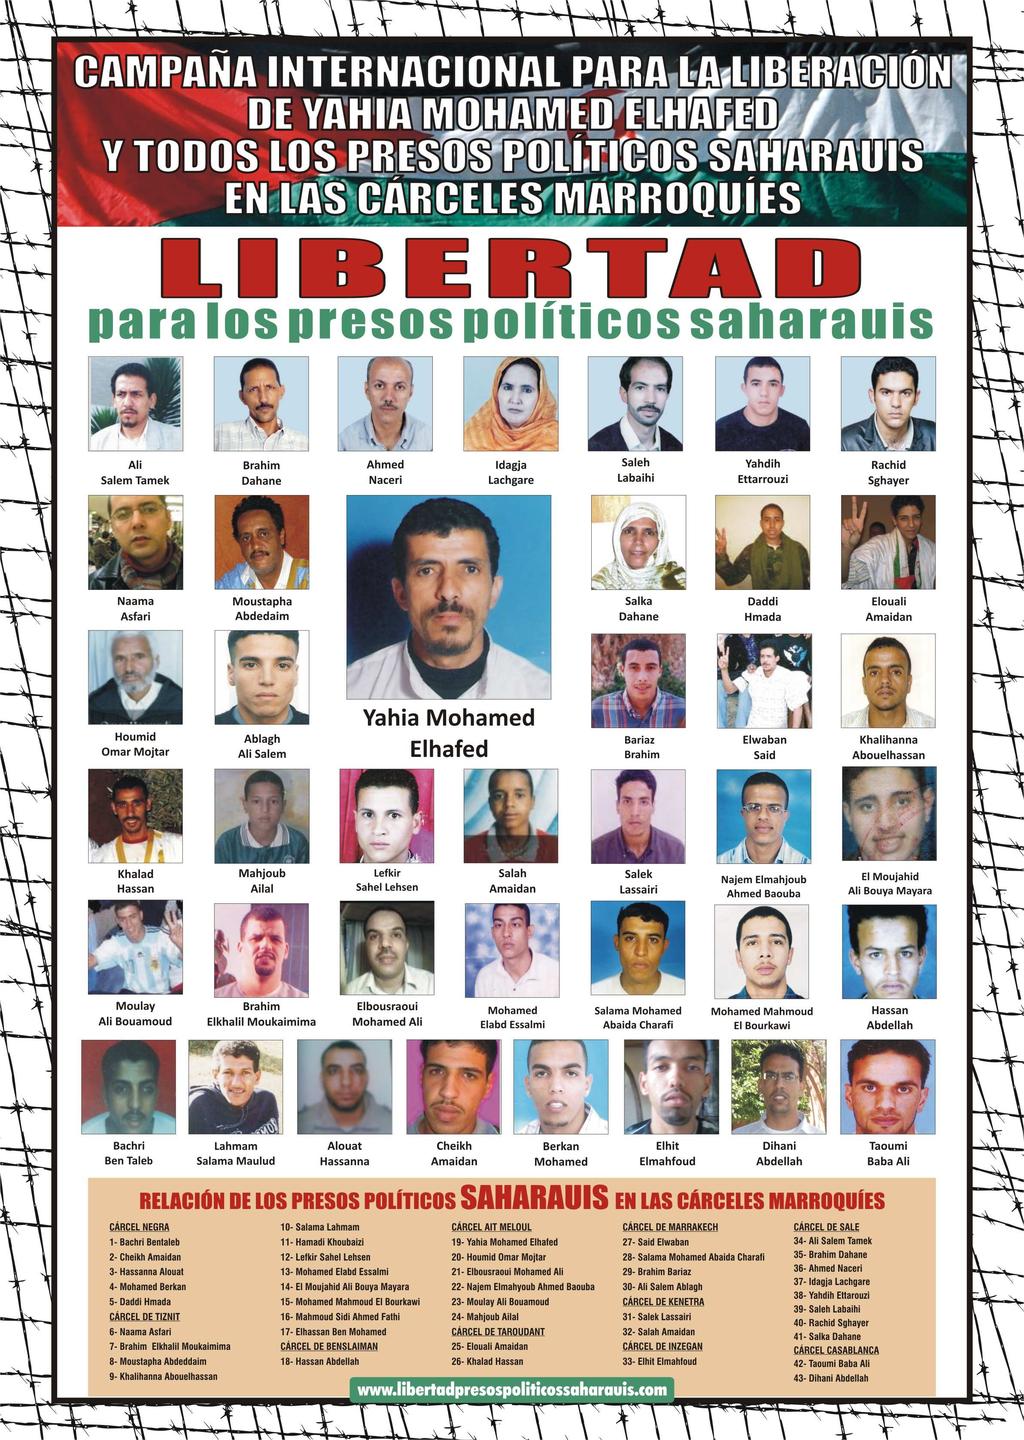 Un Saludo, *** Aporta tu firma también a la Campaña Internacional para la Liberación de todos los presos Políticos Saharauis LOS PRESOS POLITICOS UIS NECESITAN QUE